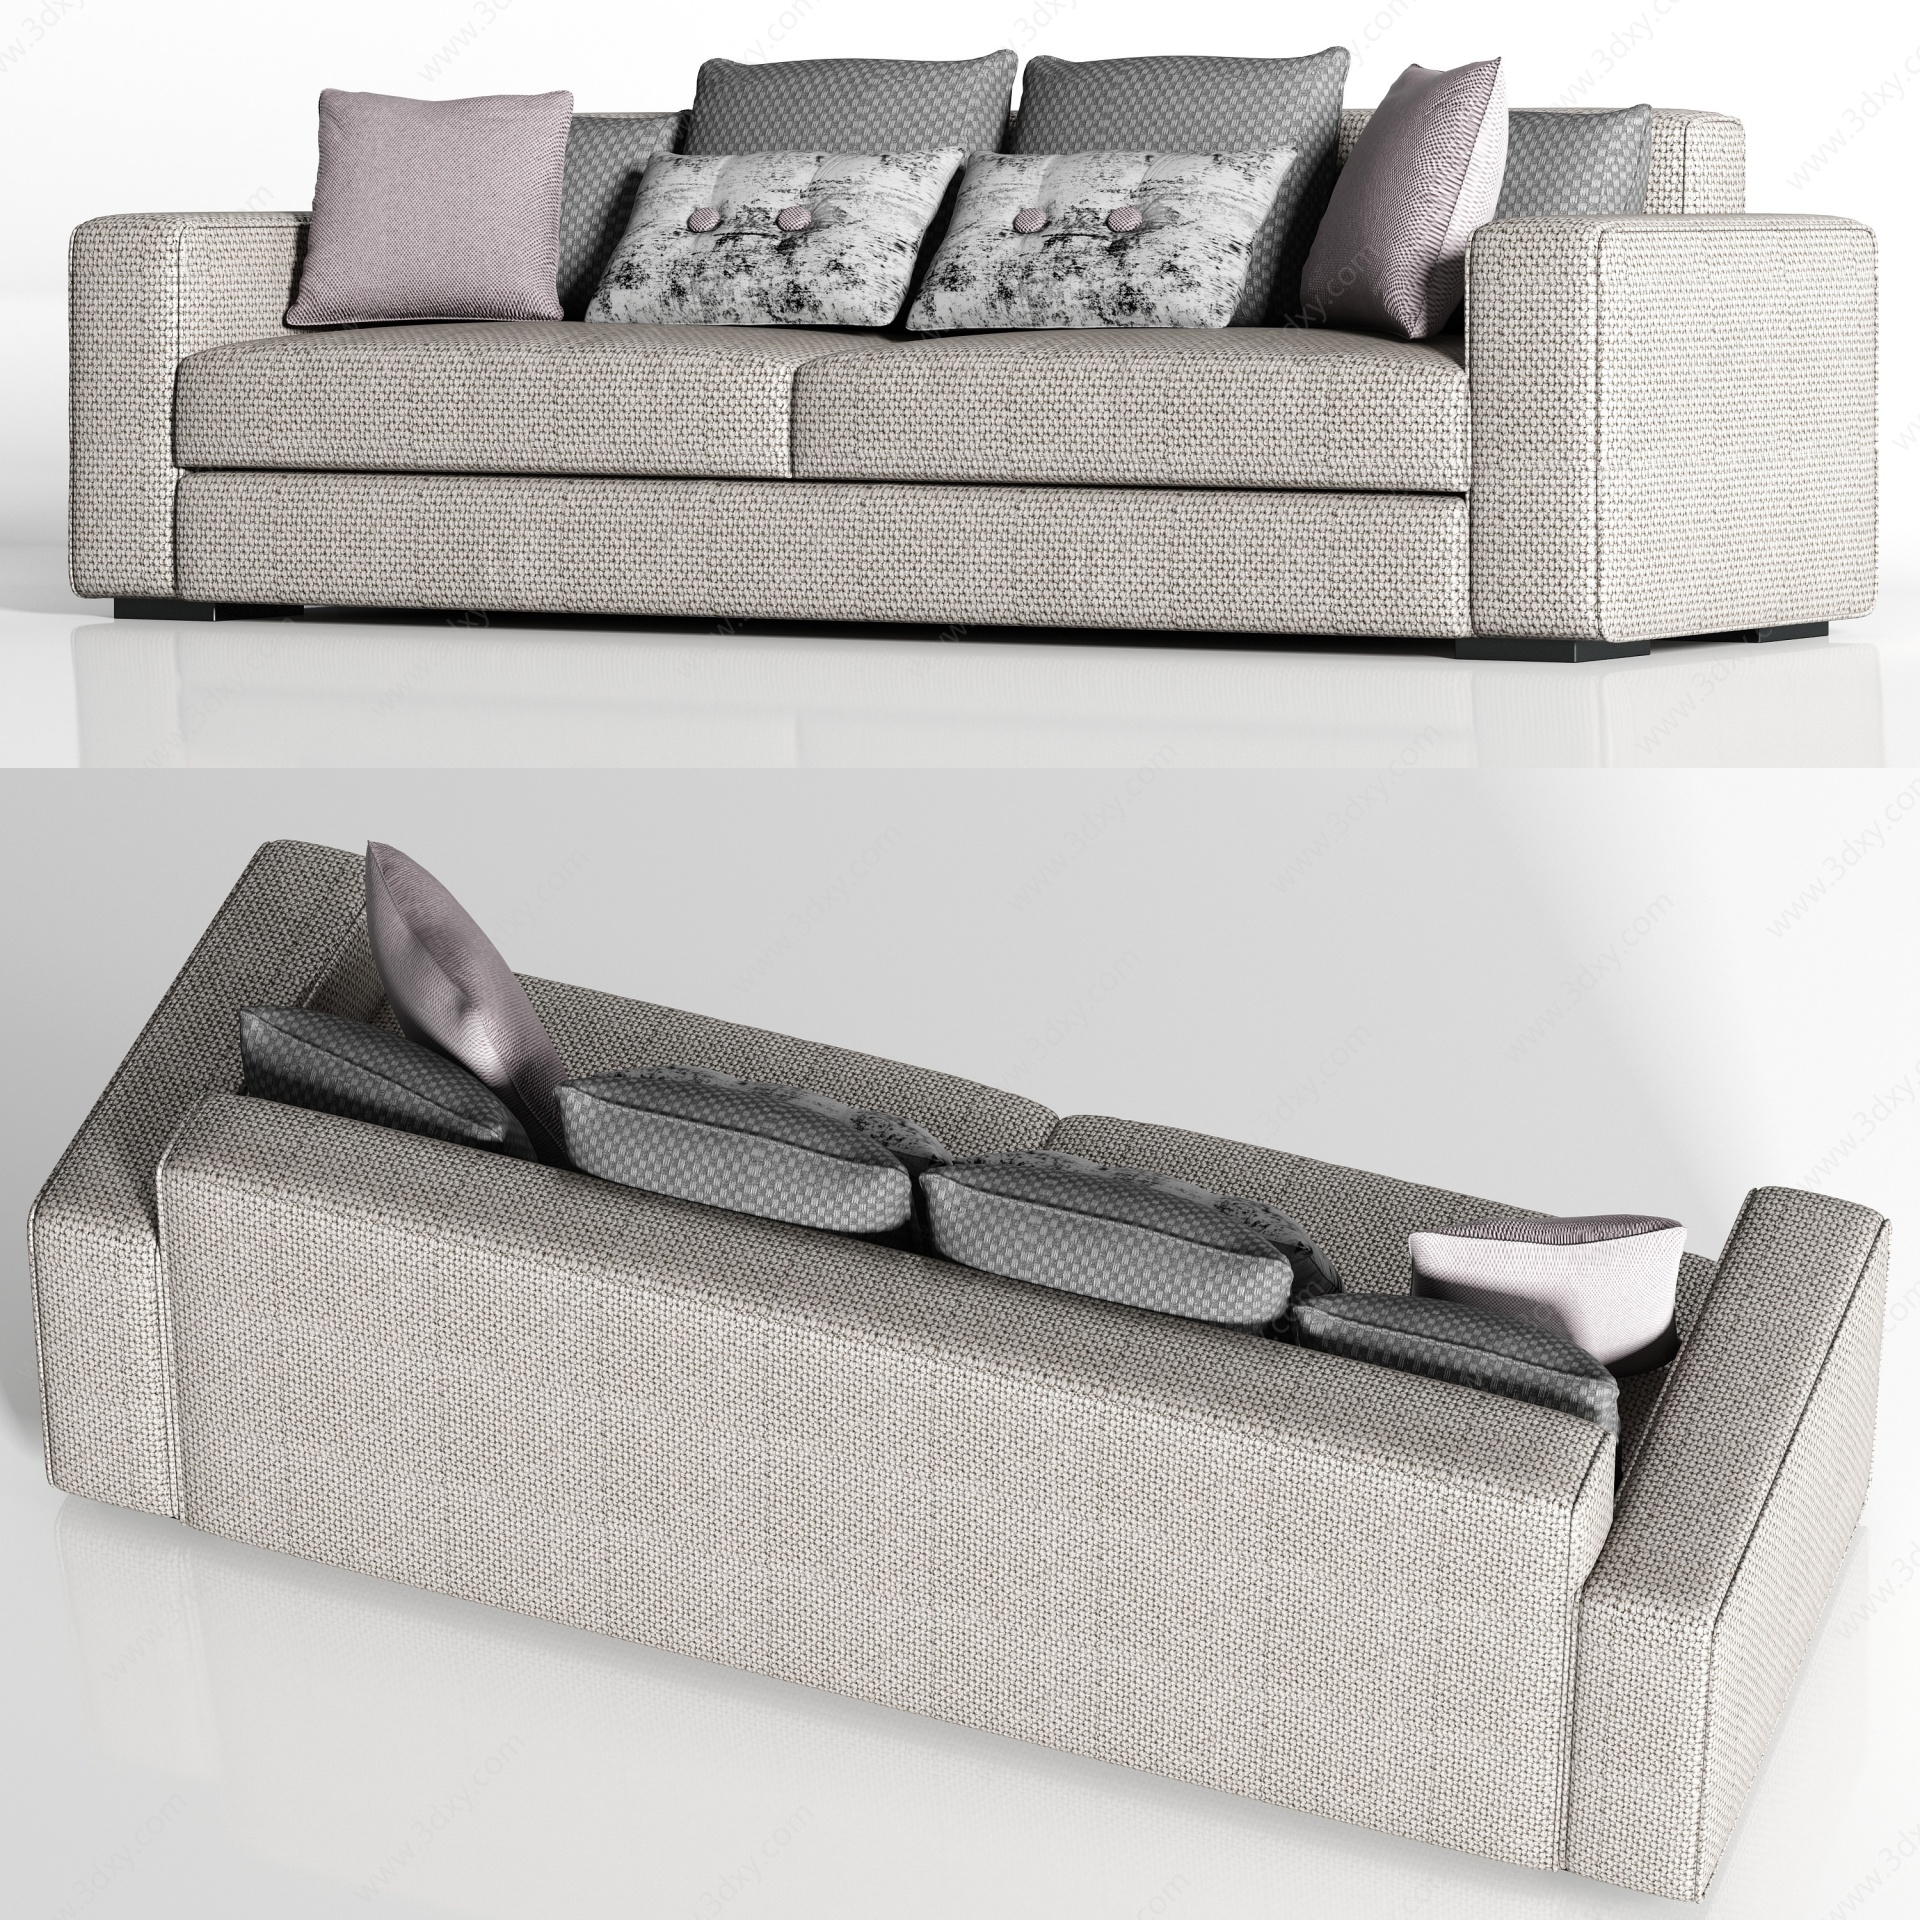 休闲布艺双人沙发枕头组合3D模型